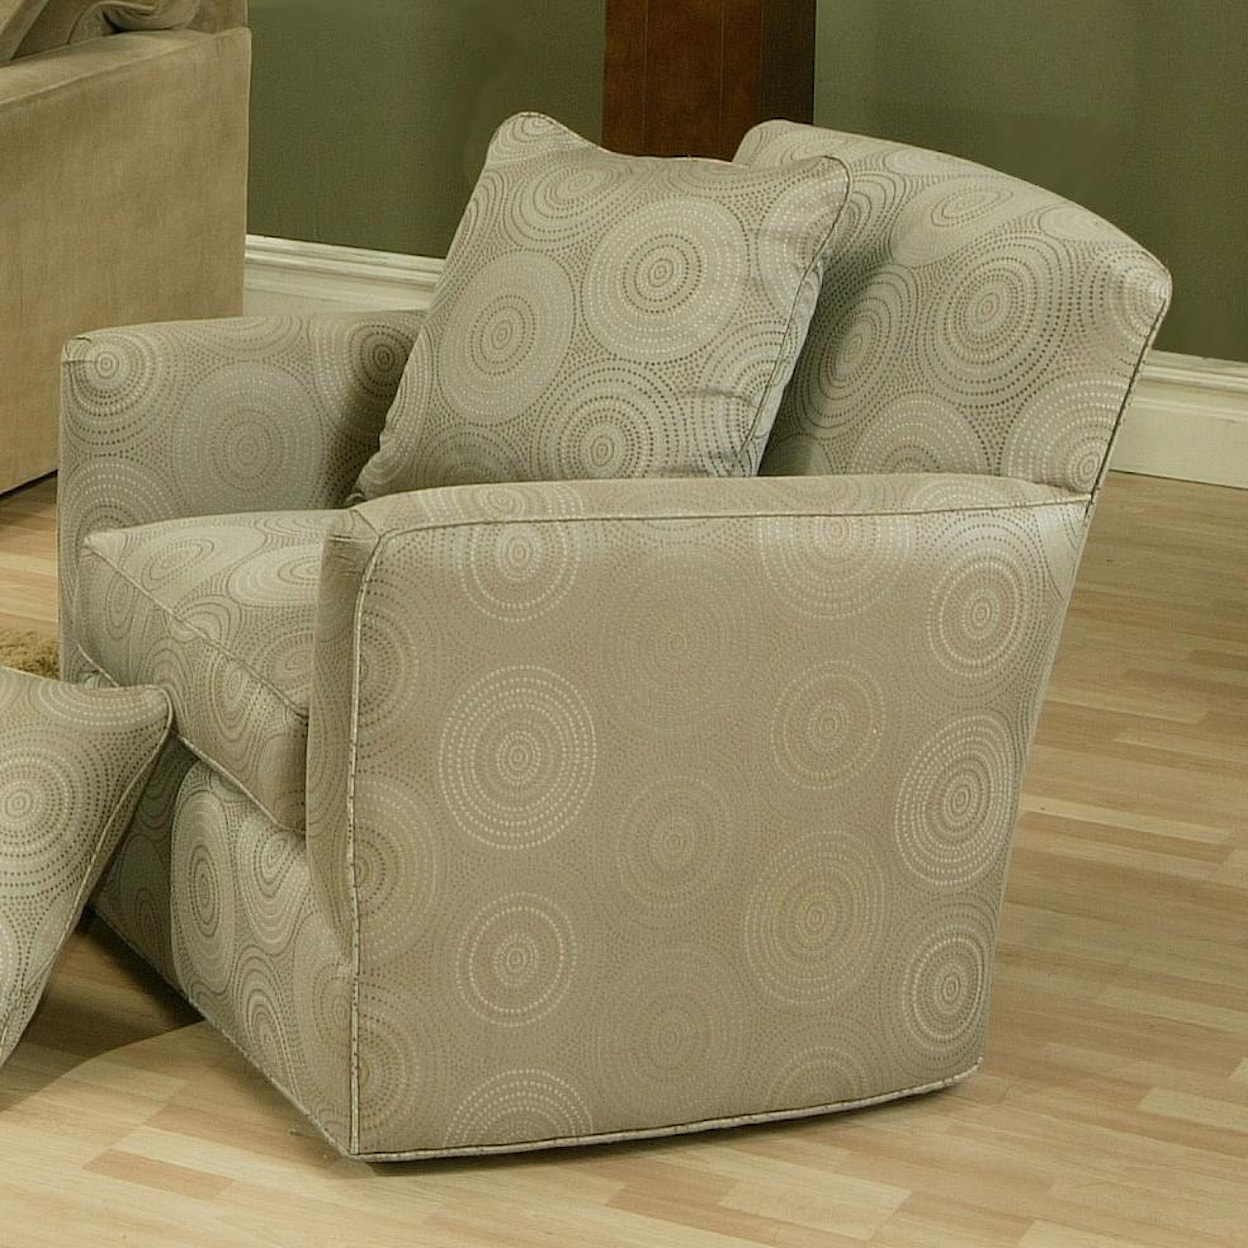 Jonathan Louis Choices - Juno Chair with Pluma Plush Cushion